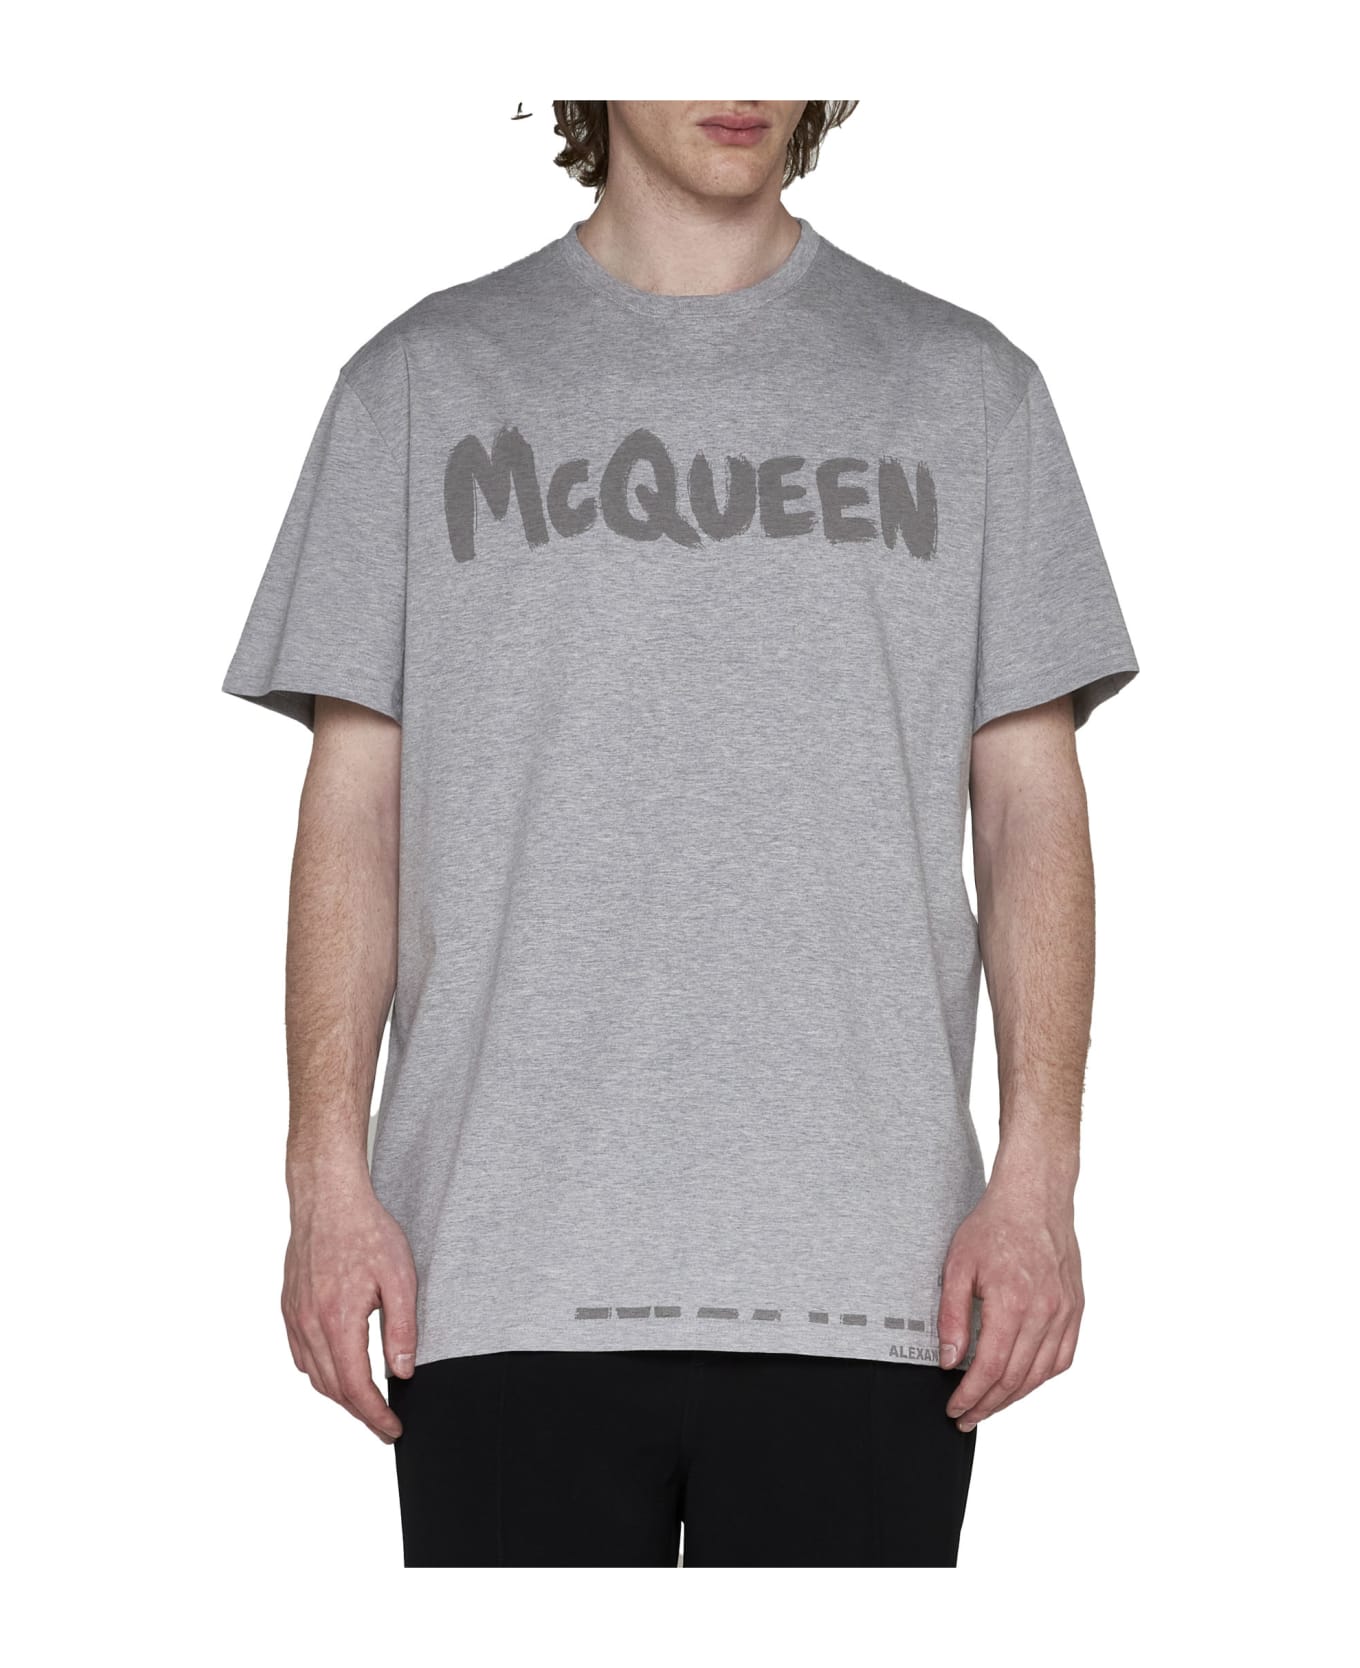 Alexander McQueen T-Shirt - Pale grey/tonal